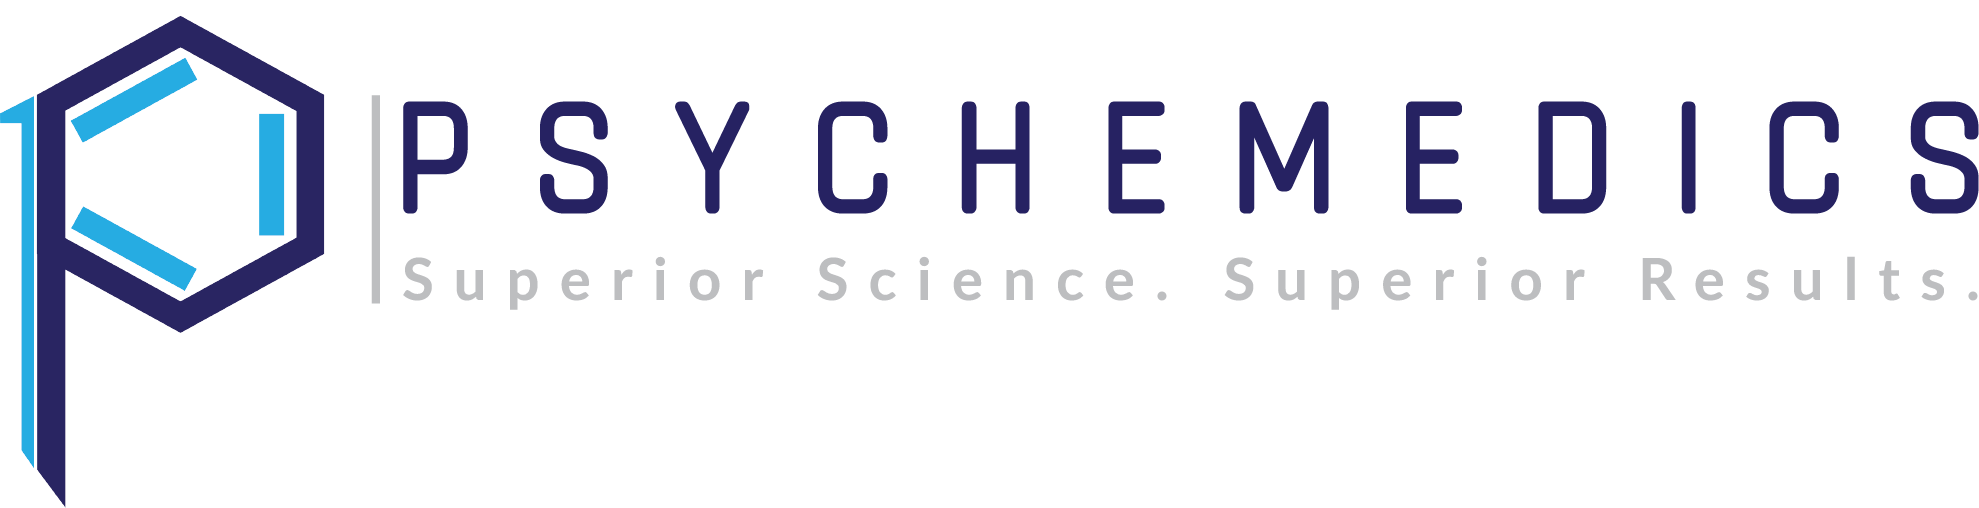 Psychememdics logo